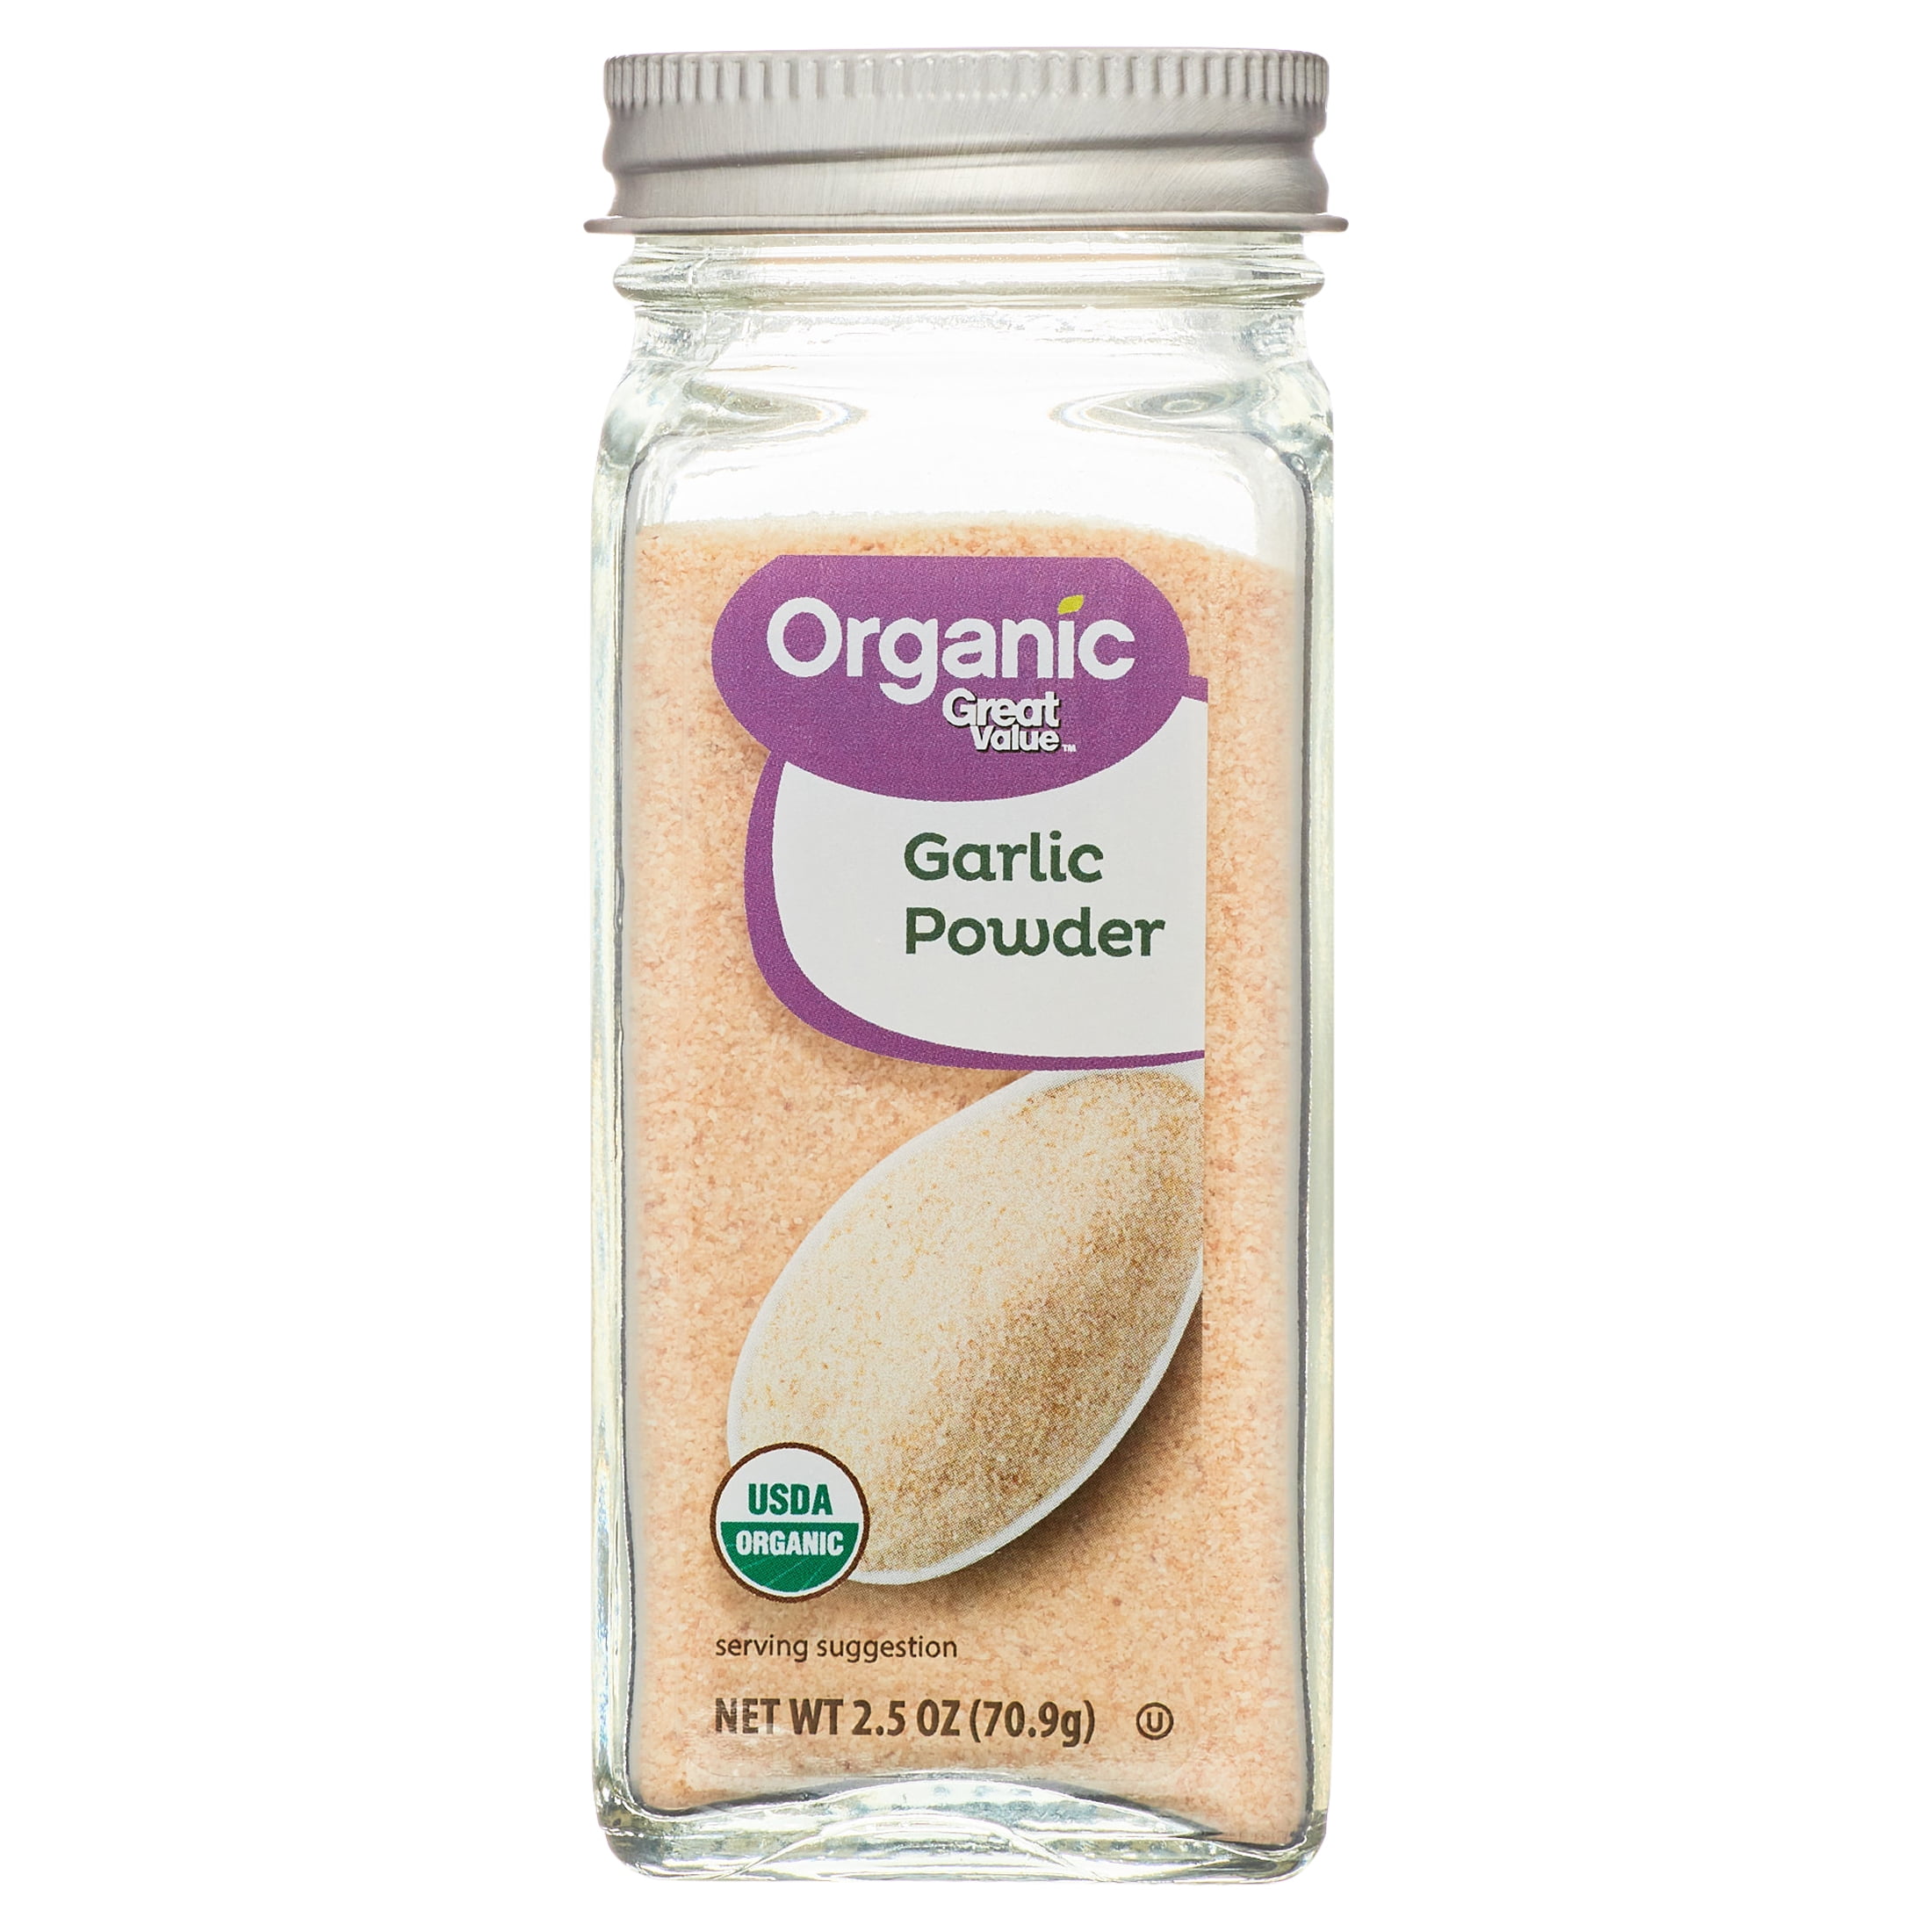 Regal Garlic Powder 5 lbs.